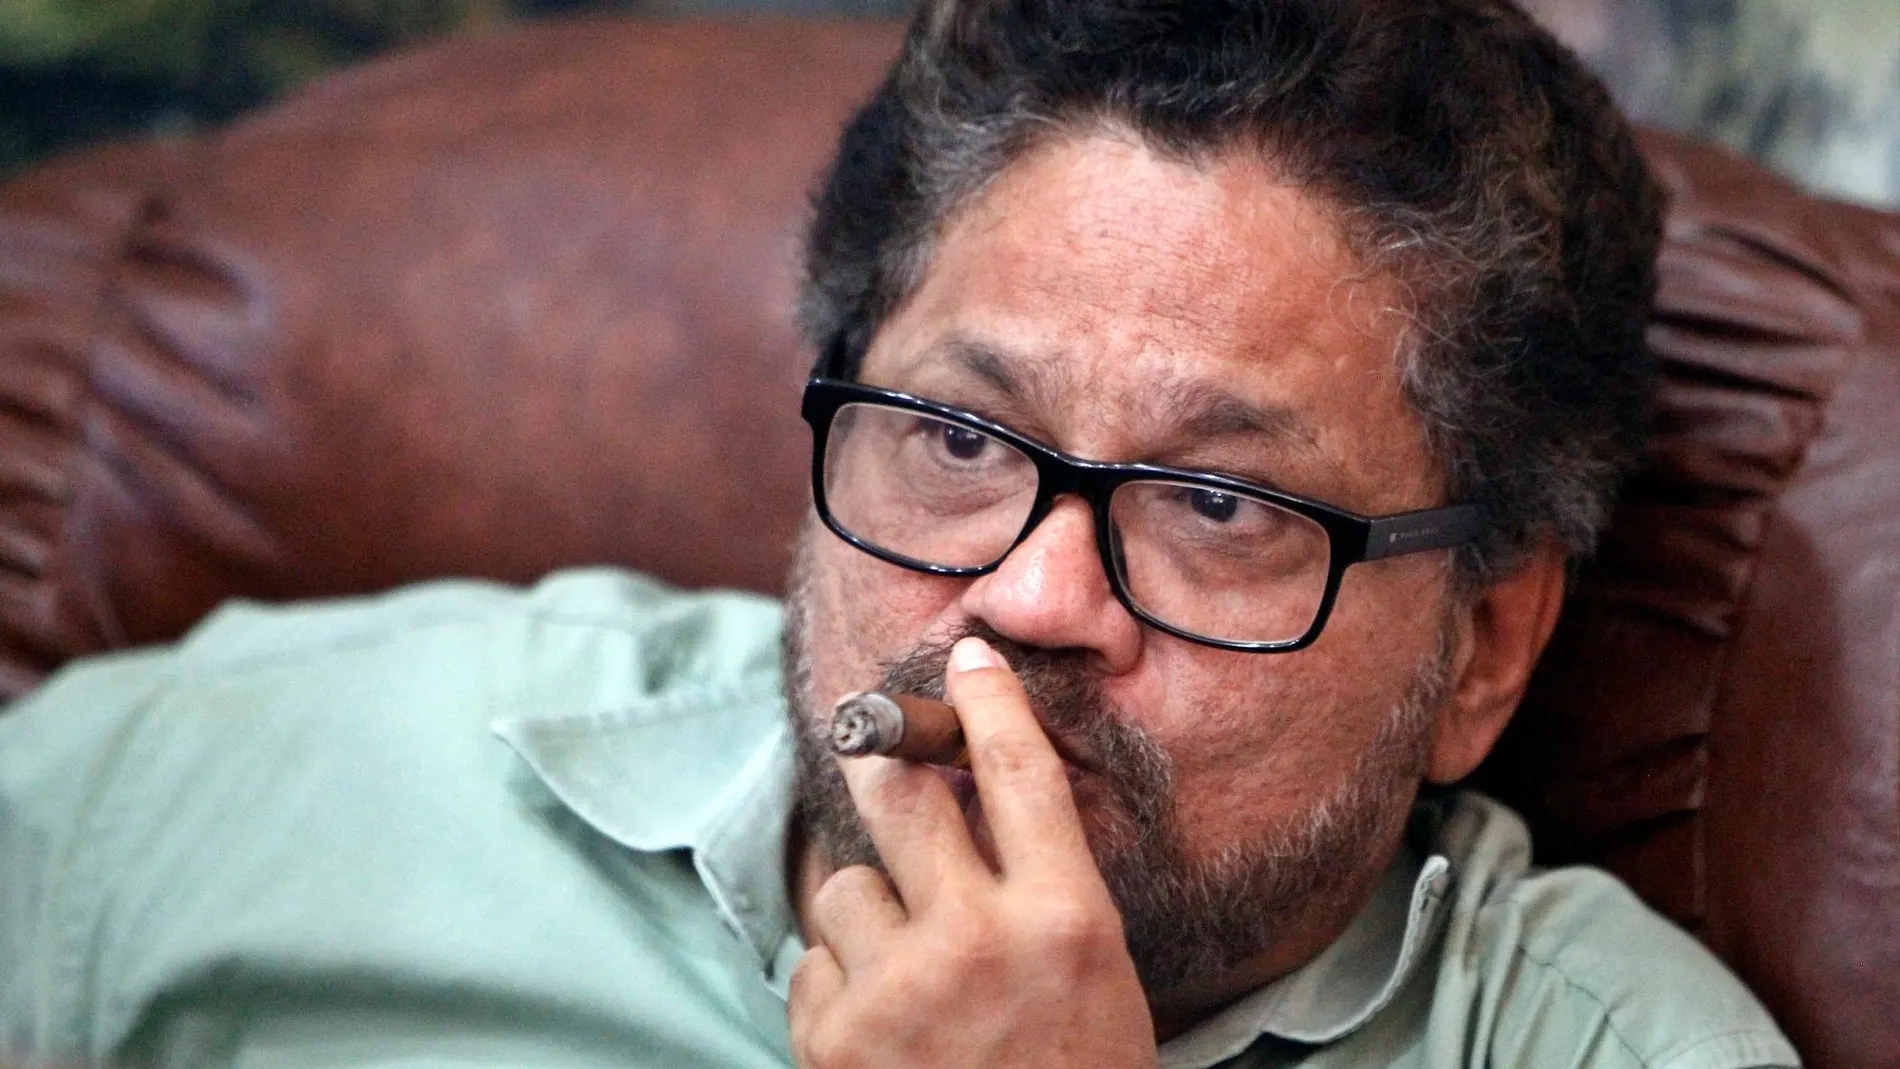 El jefe negociador de las FARC, Luciano Marín alias "Iván Márquez", en una foto de archivo